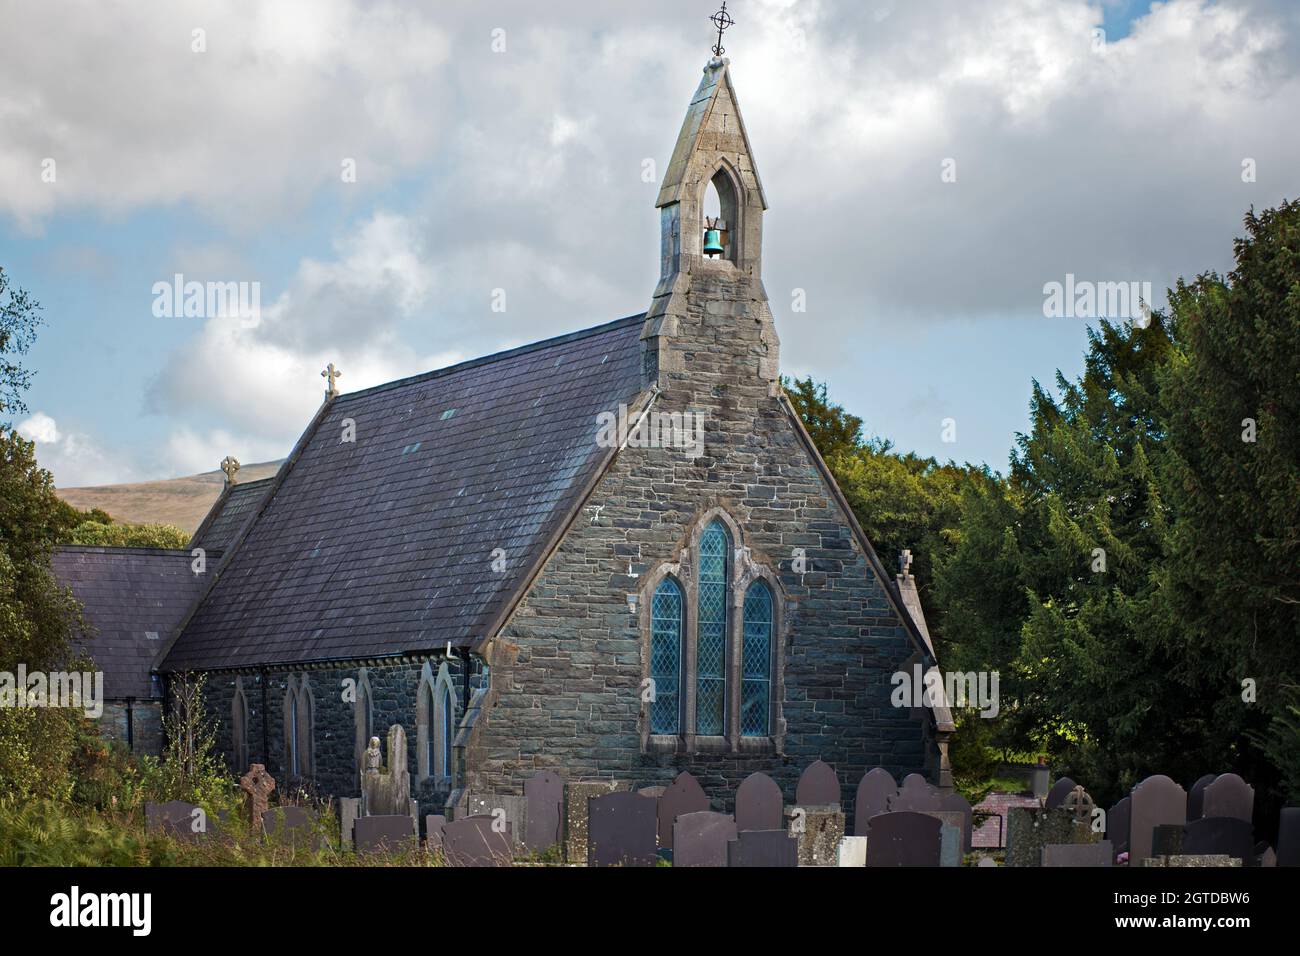 St Mary's dans le village de Tregarth est une église paroissiale de l'Église au Pays de Galles (diocèse de Bangor). Il a été construit en 1869. Banque D'Images